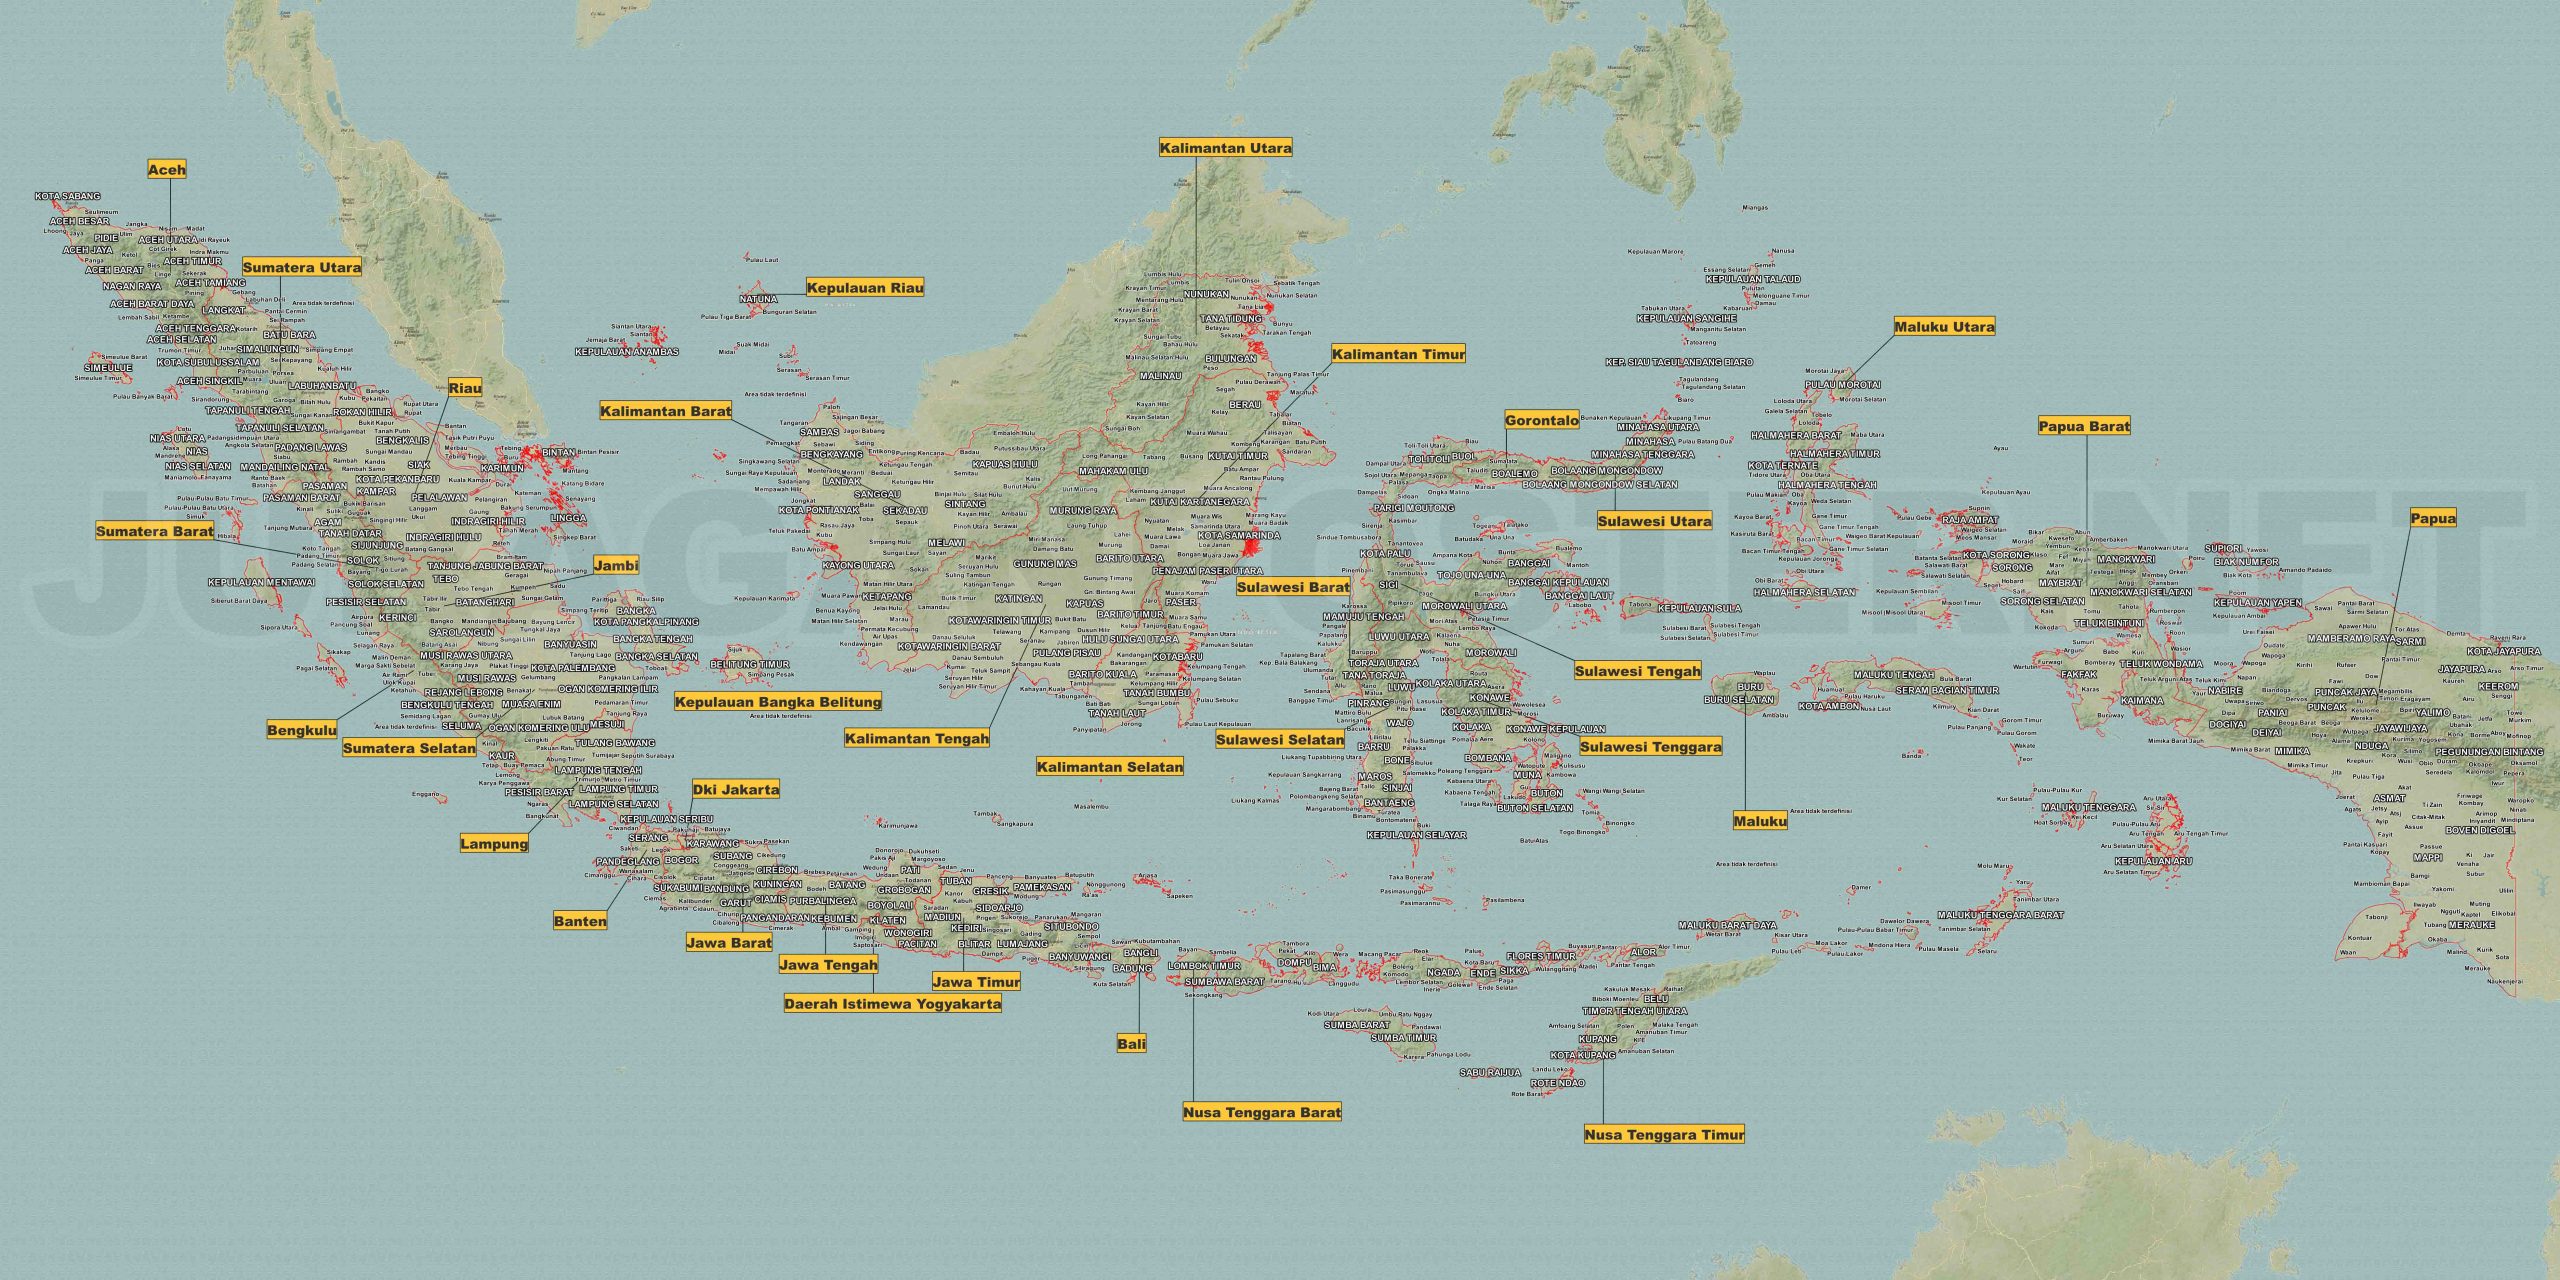 Peta Indonesia Online: Menyajikan Data Geografis secara Digital